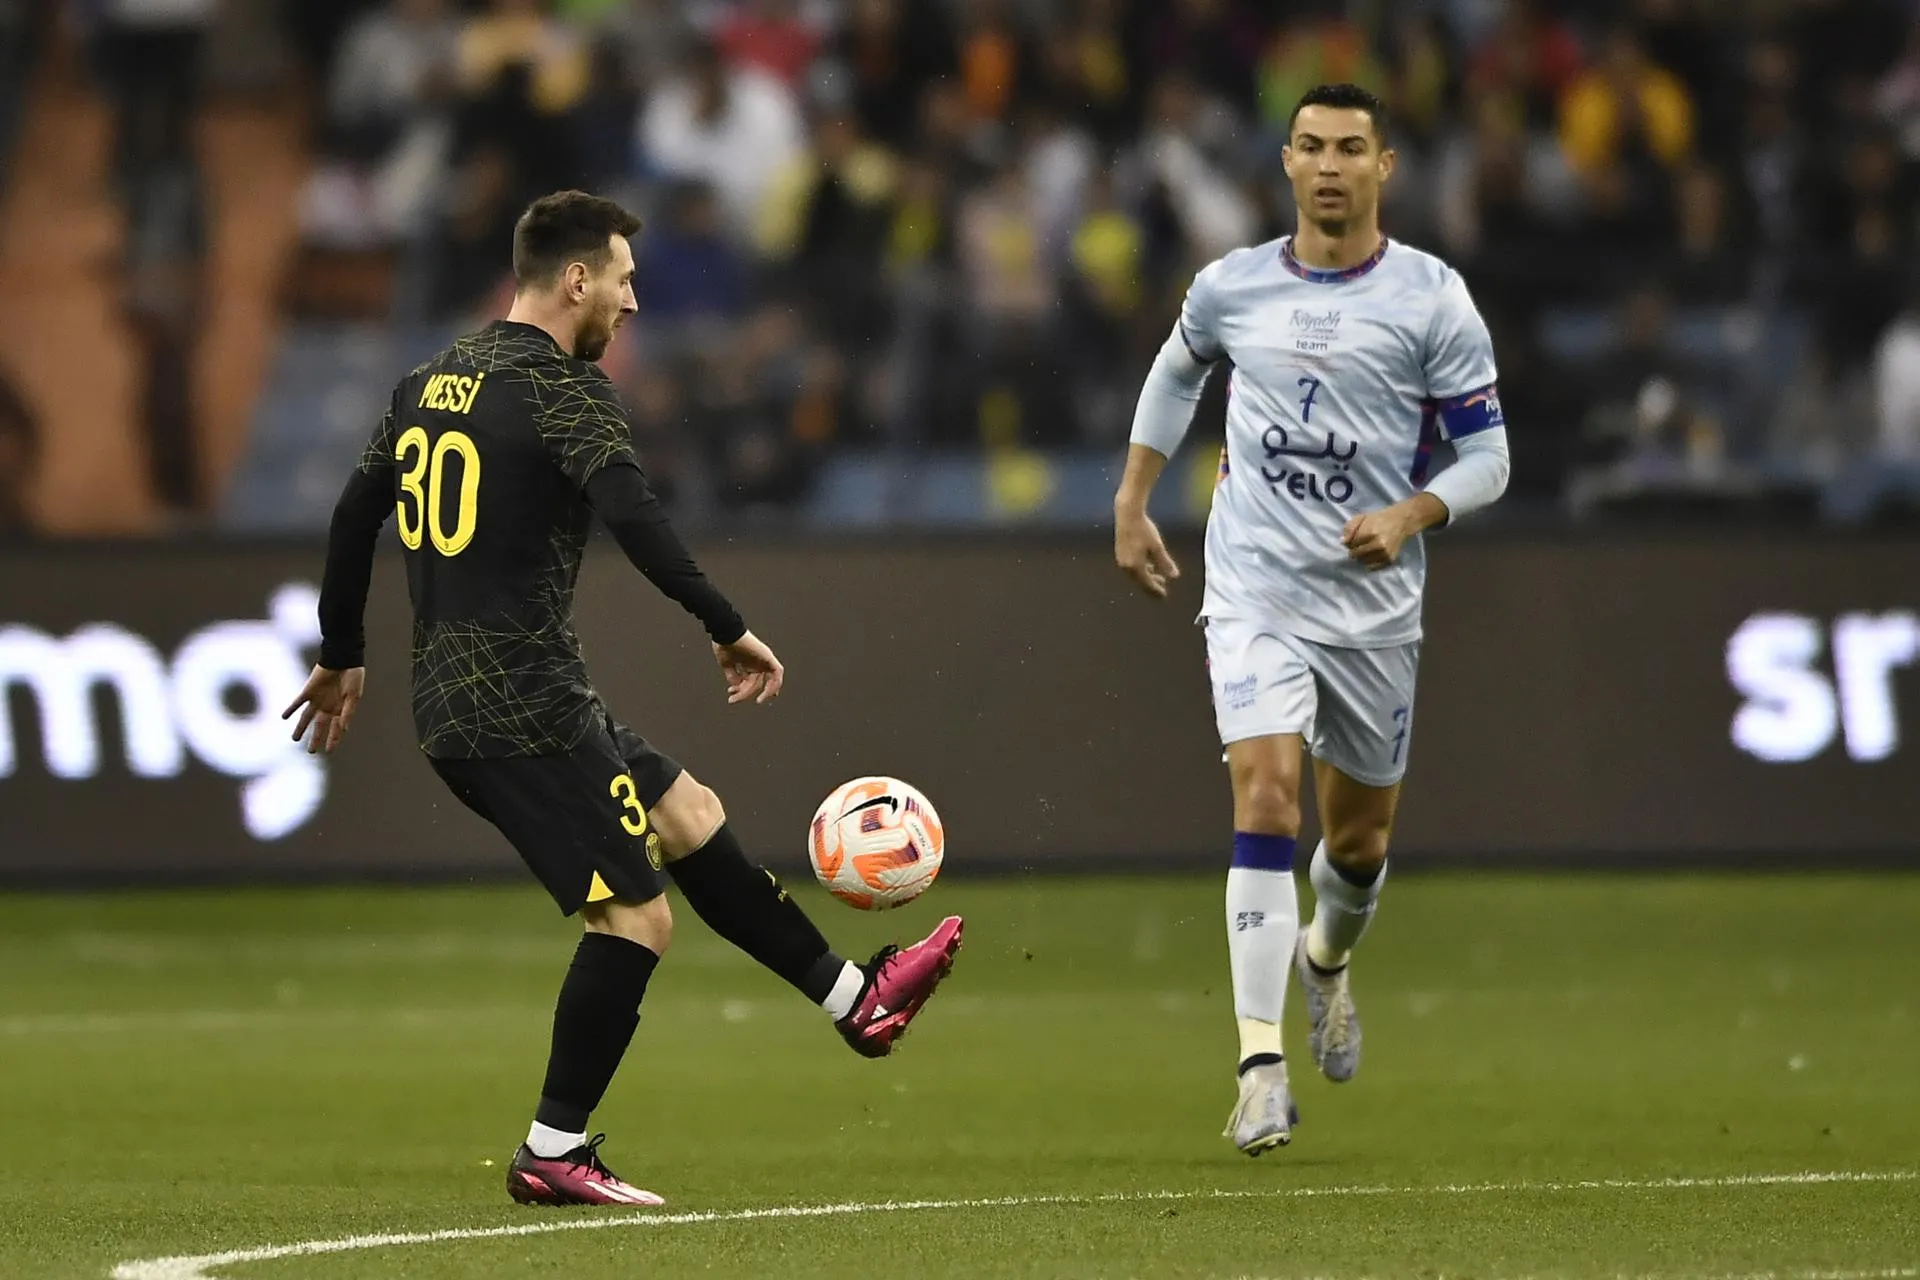 Goles de Messi y Cristiano Ronaldo, en nuevo espectáculo de un duelo eterno